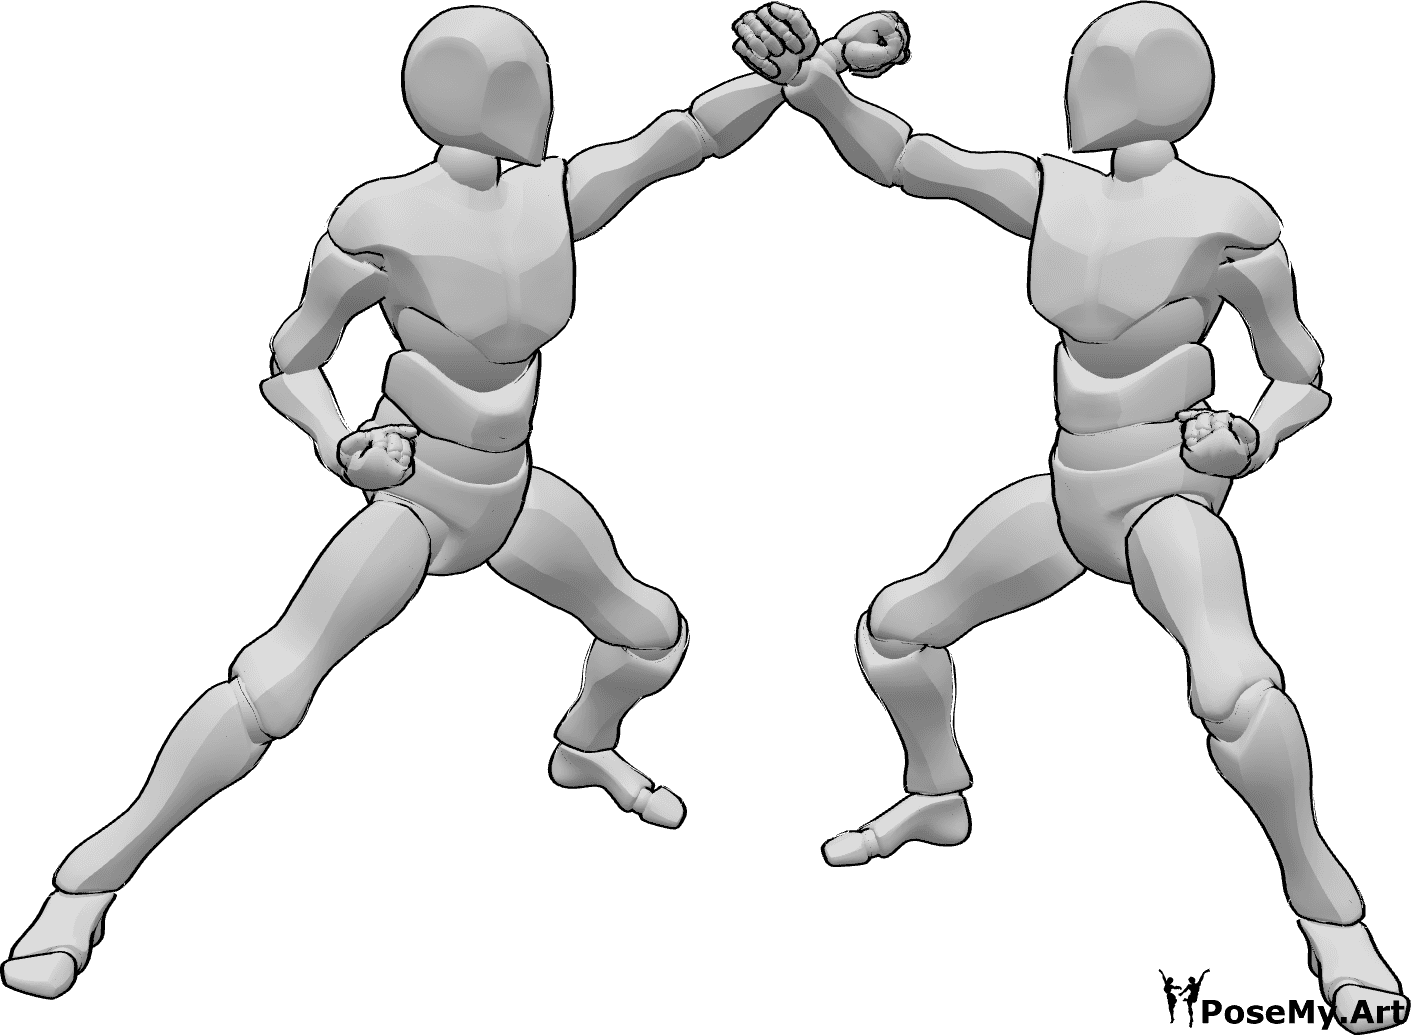 Référence des poses- Deux hommes posant en karaté - Deux hommes se battent dans une pose de karaté